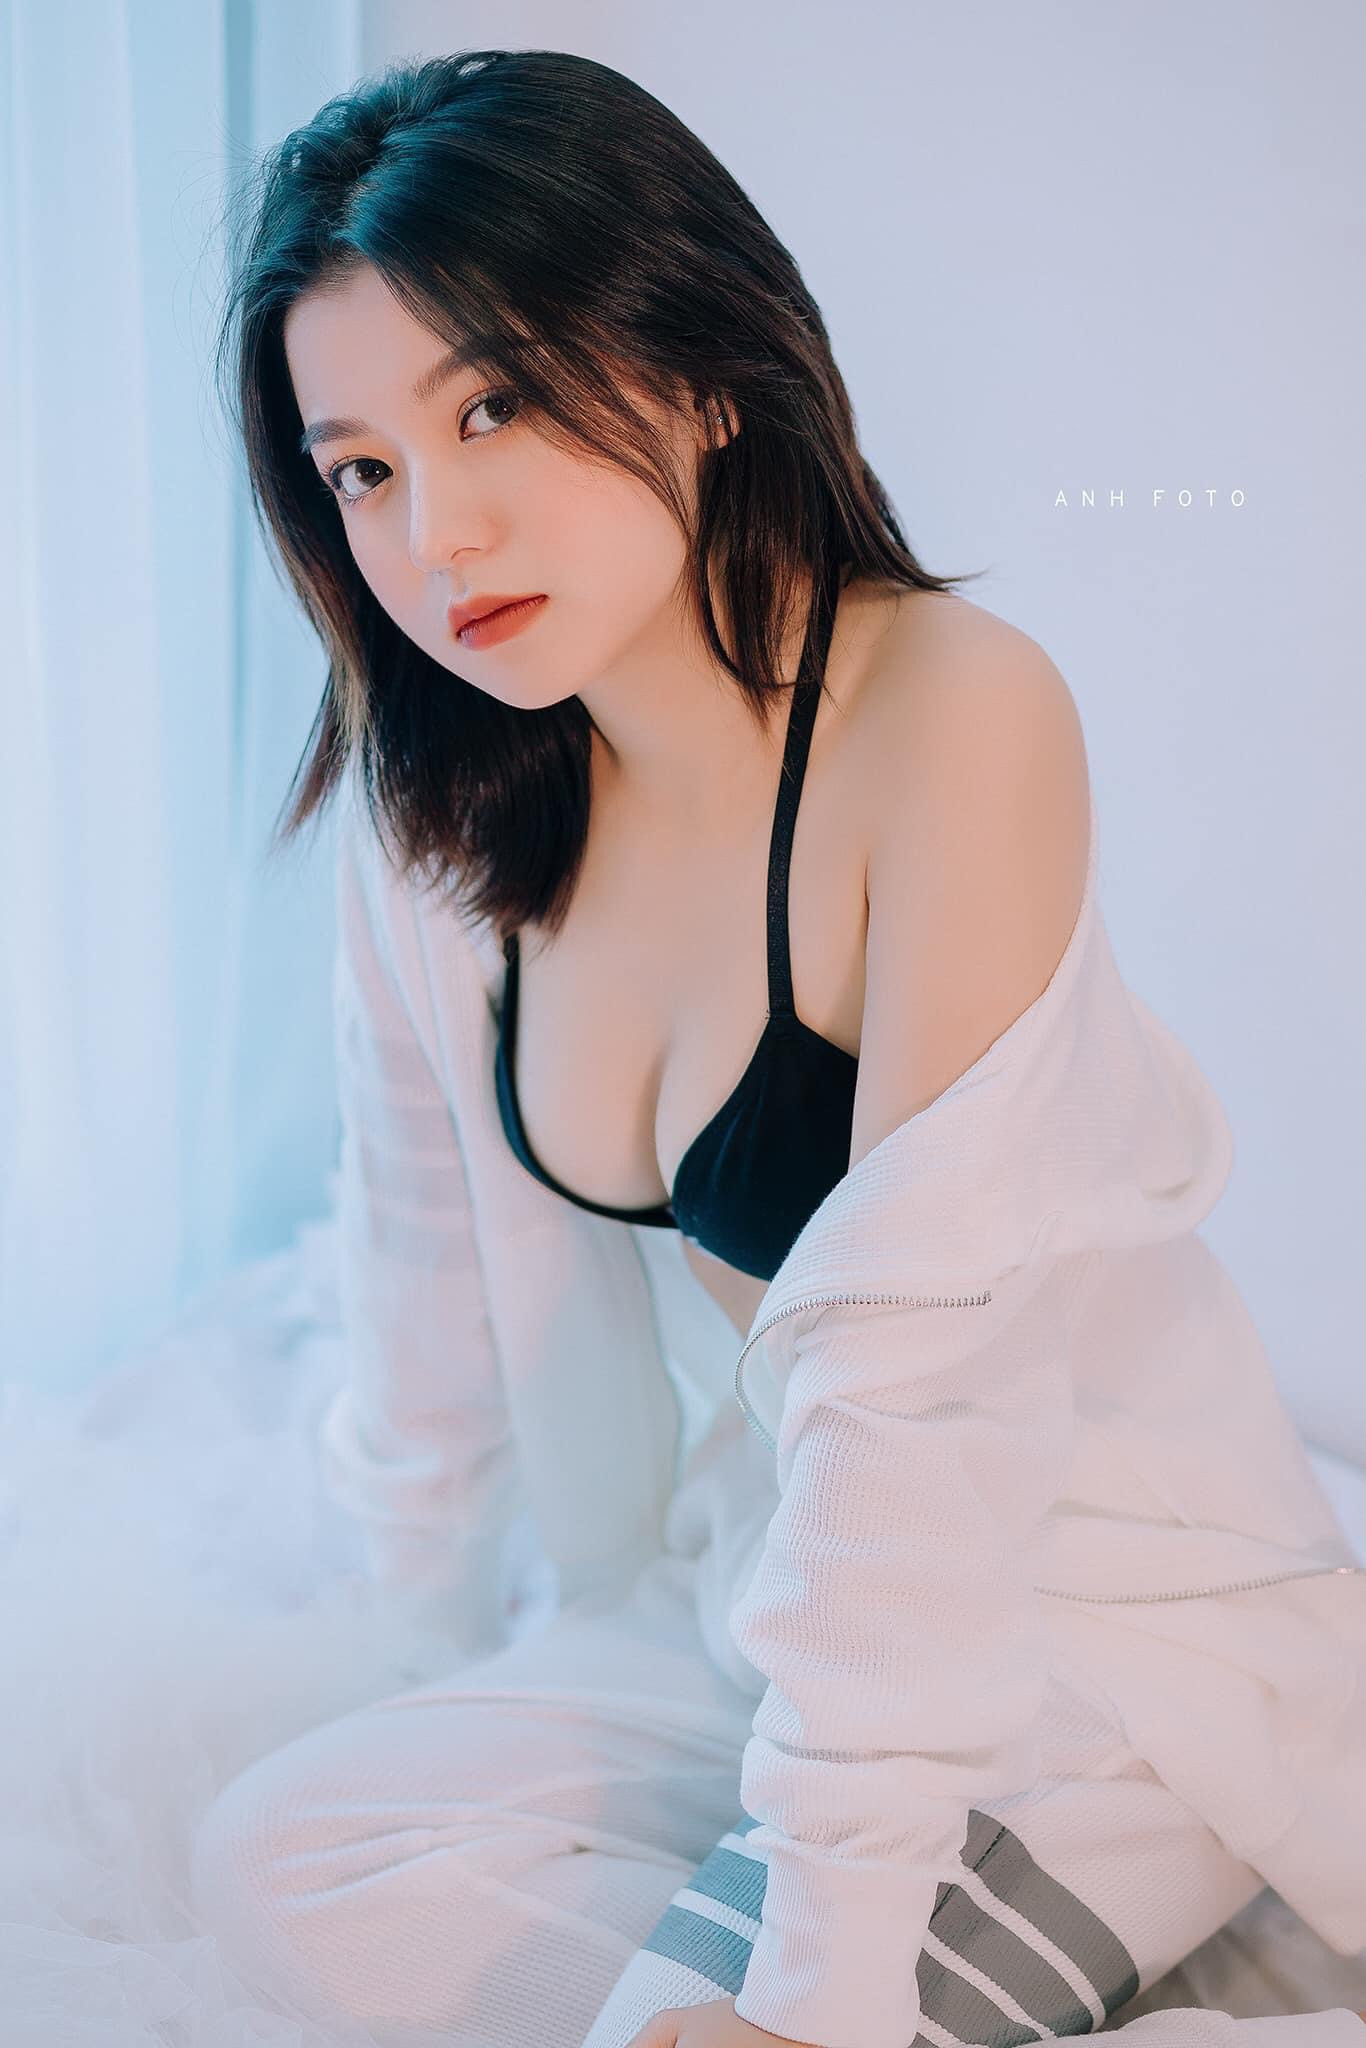 Những khuôn hình sexy mà không phản cảm của hot girl Lạng Sơn - 3